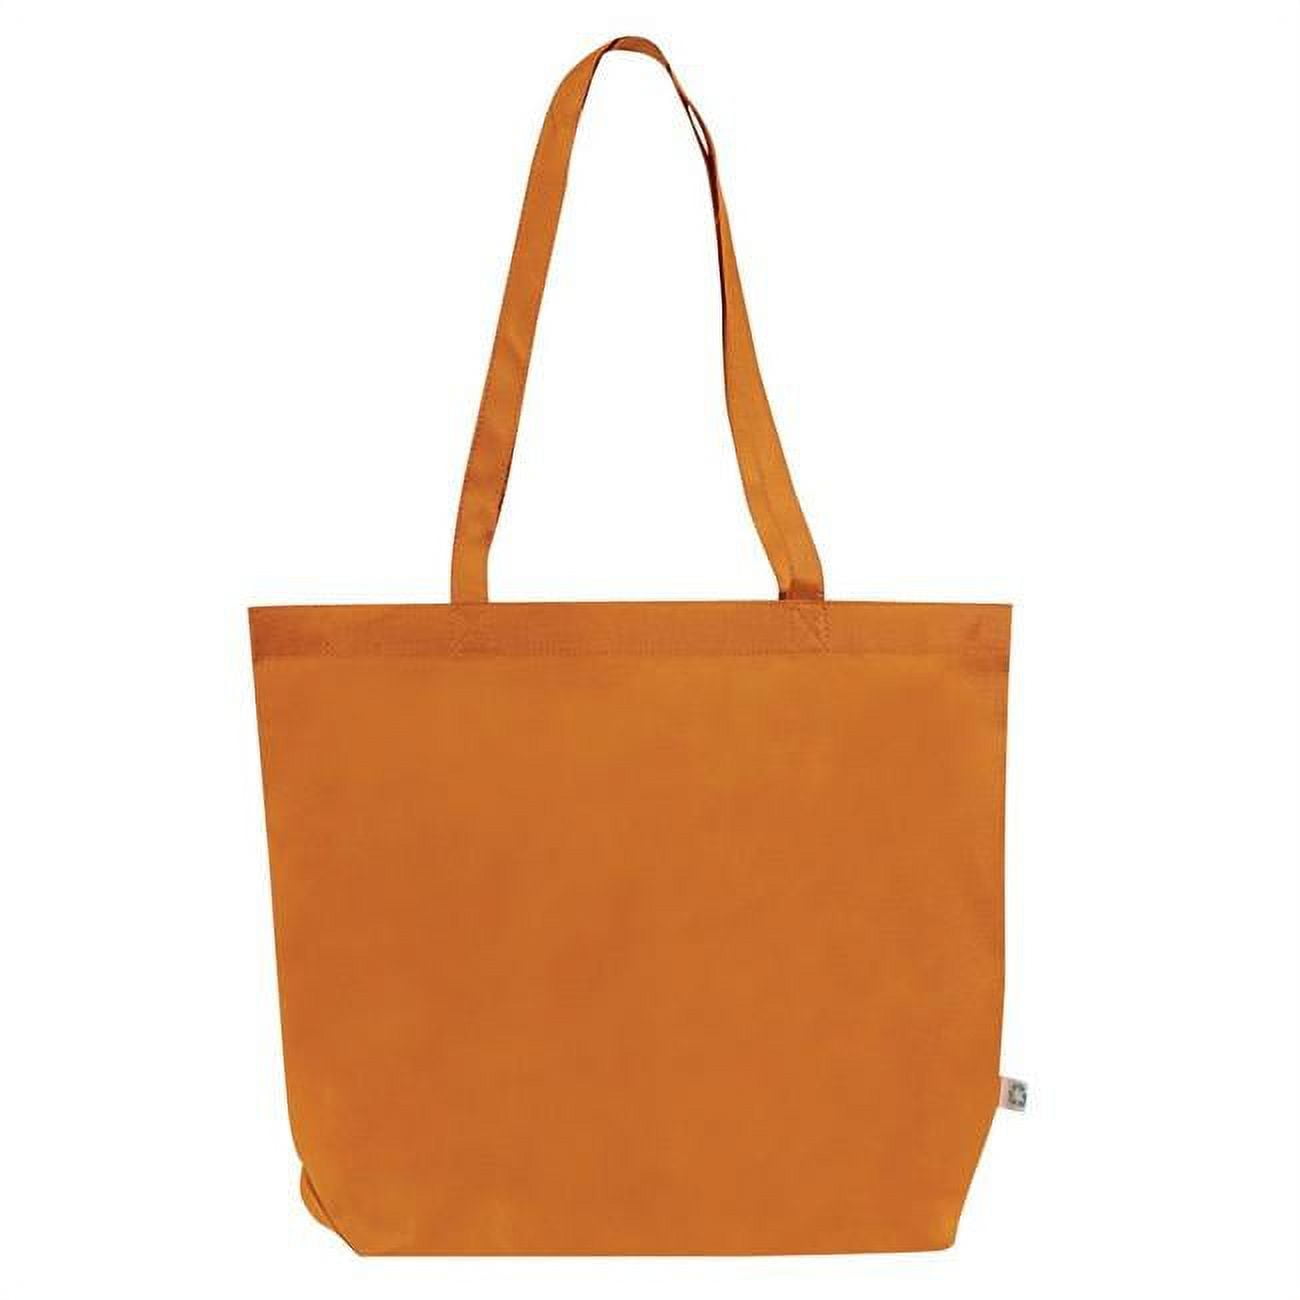 2333878 Jumbo Shopping Tote Bag - Orange, Case Of 100